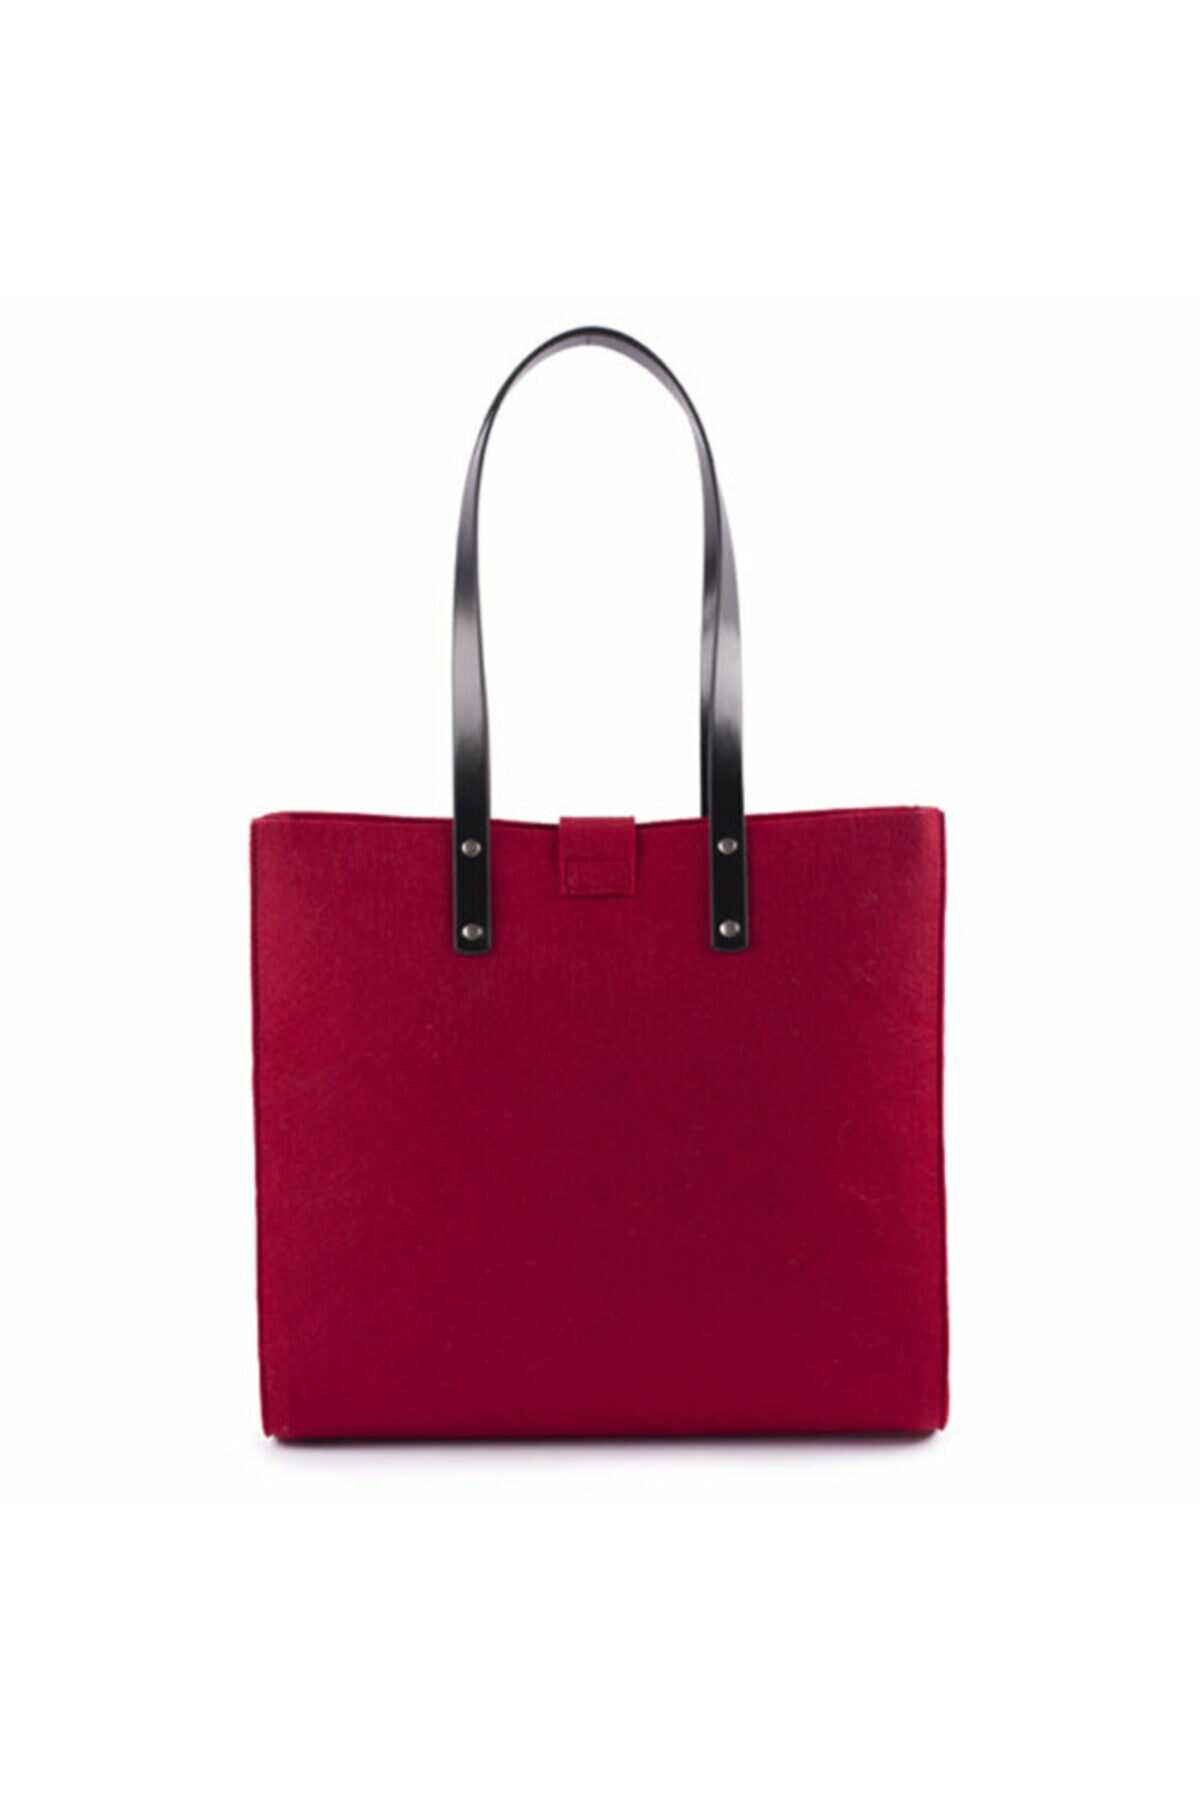 کیف نمدی دوشی طرح دار آویز دار زنانه قرمز برند Biggdesign 